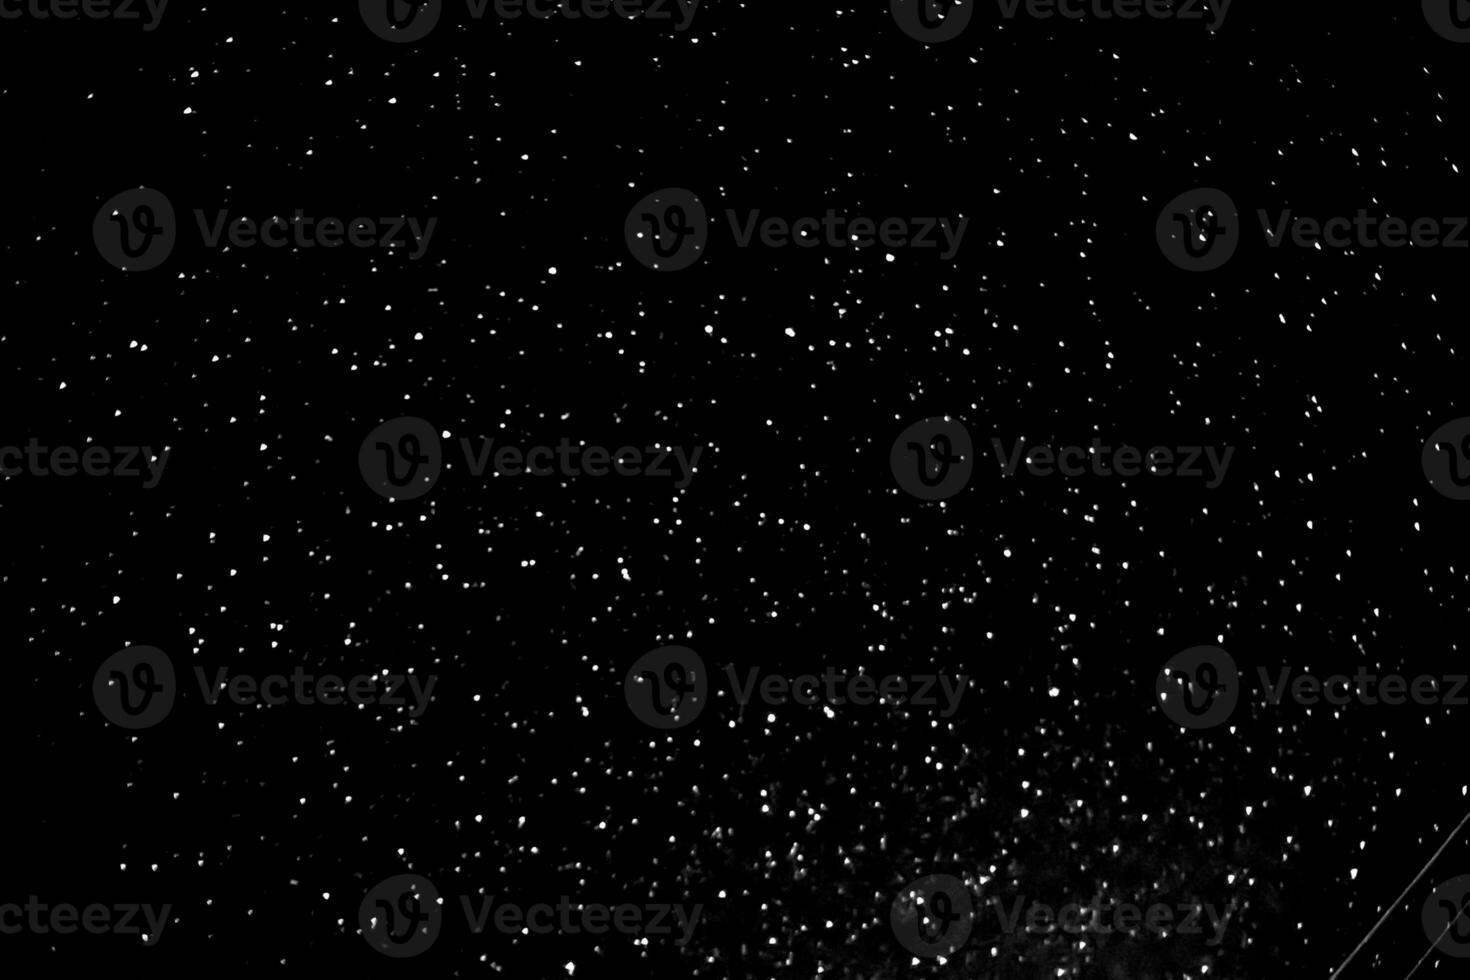 estrelas dentro a noite céu, imagem estrelas fundo textura. foto